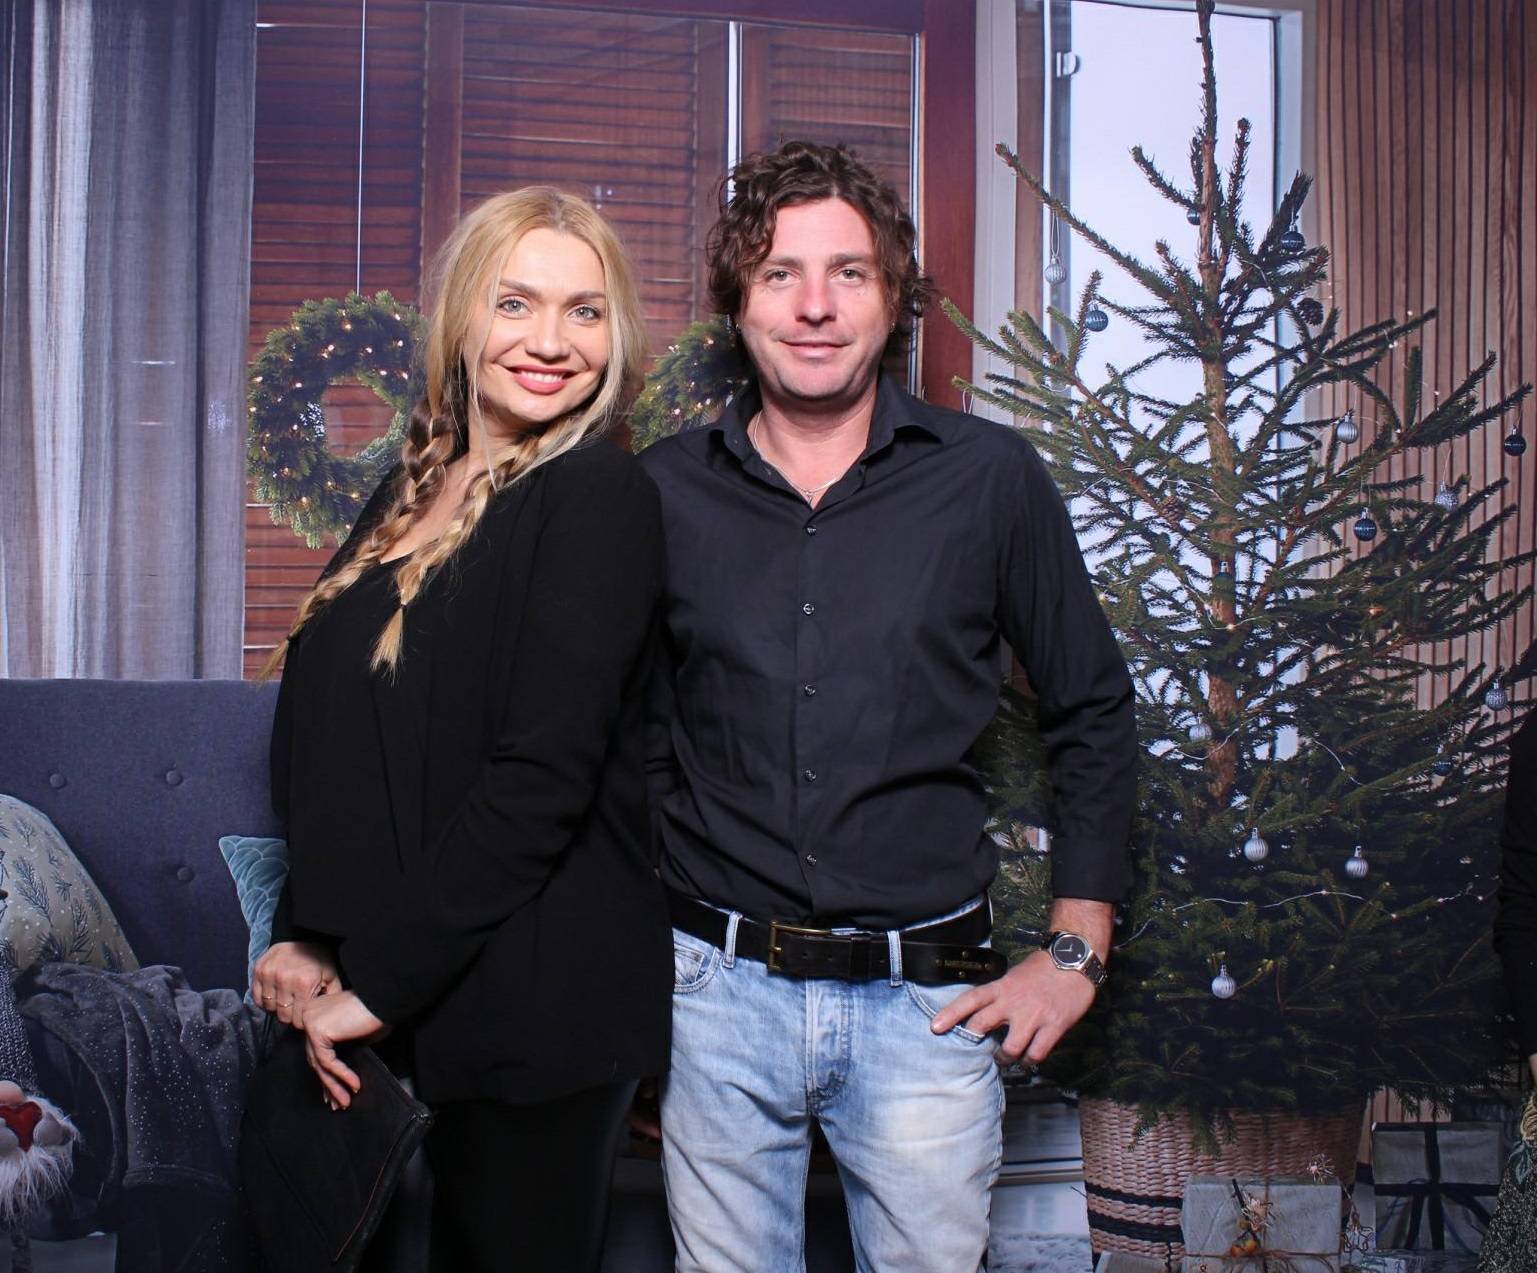 Un alt cuplu celebru din showbiz își spune adio! Cristina Cioran și Traian Văduva s-au despărțit